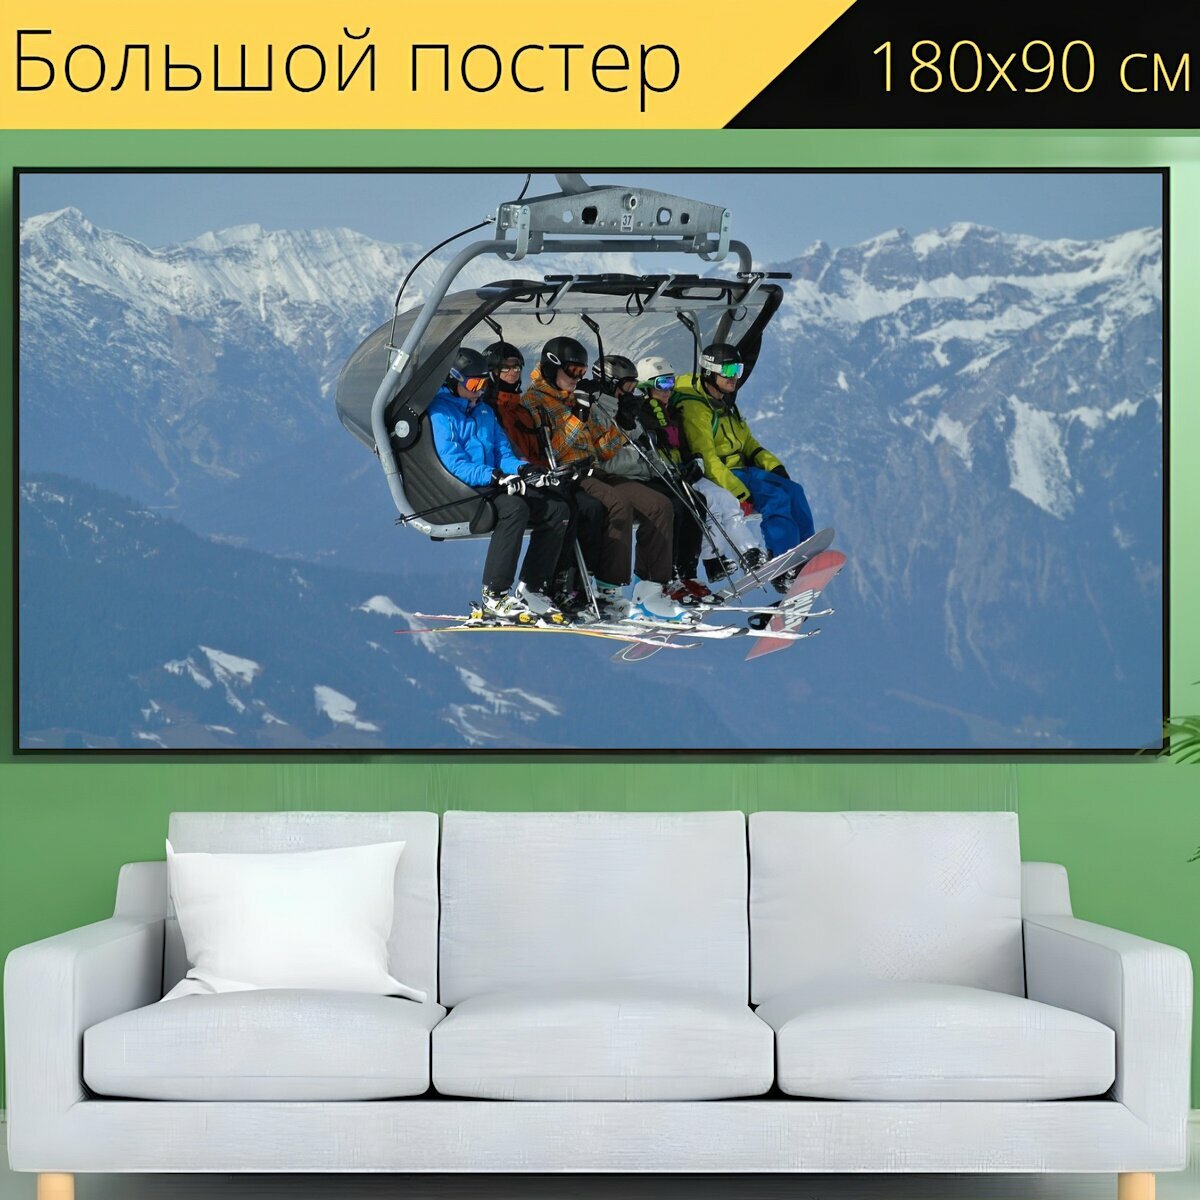 Большой постер "Горнолыжный подъемник, кататься на лыжах, лыжи" 180 x 90 см. для интерьера